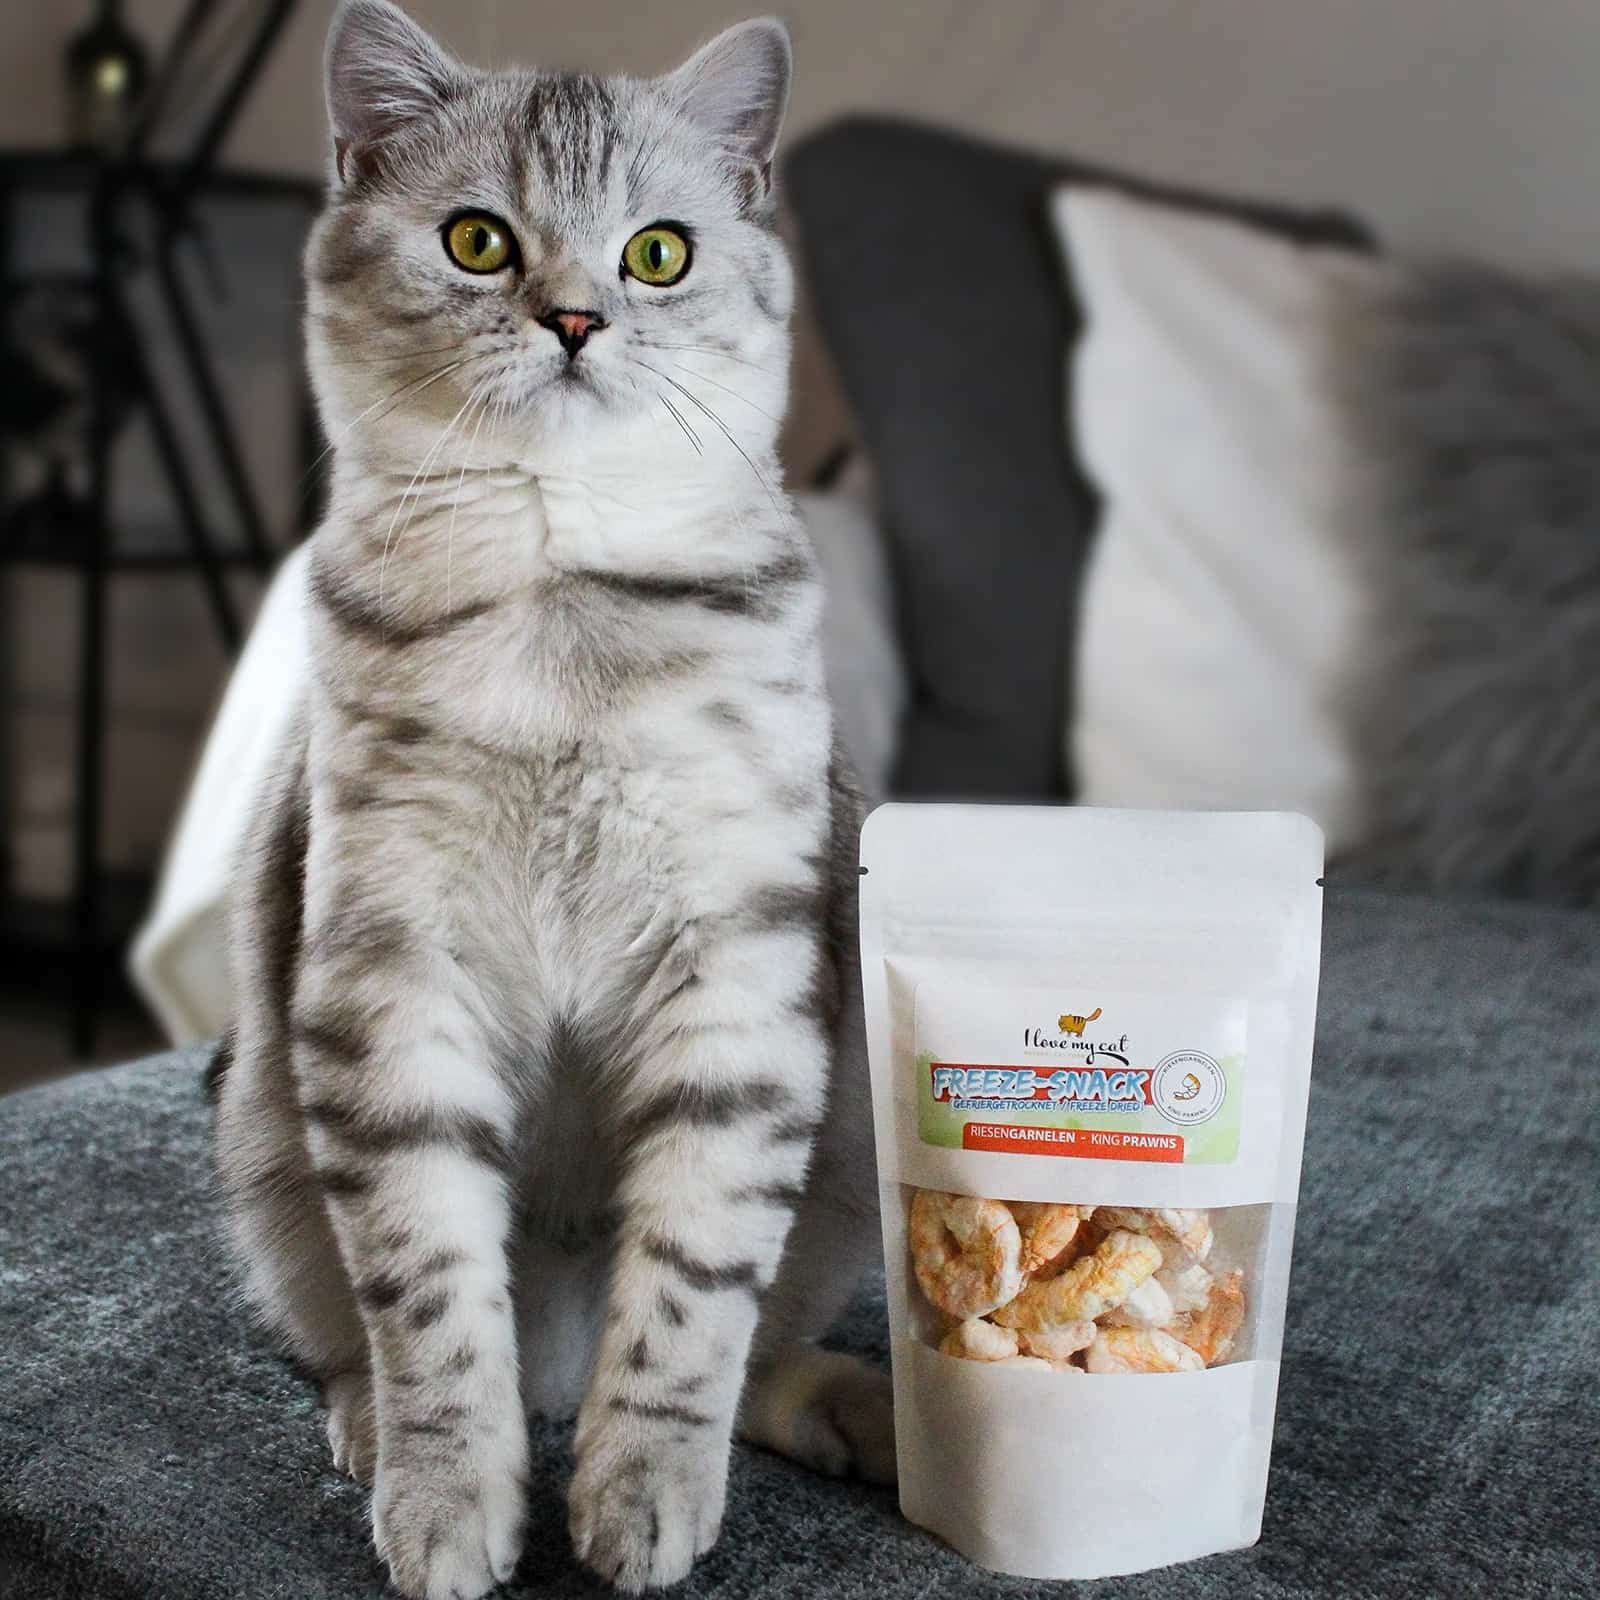 I love my cat Freeze-Snack für Katzen - Riesengarnelen (gefriergetrocknet)